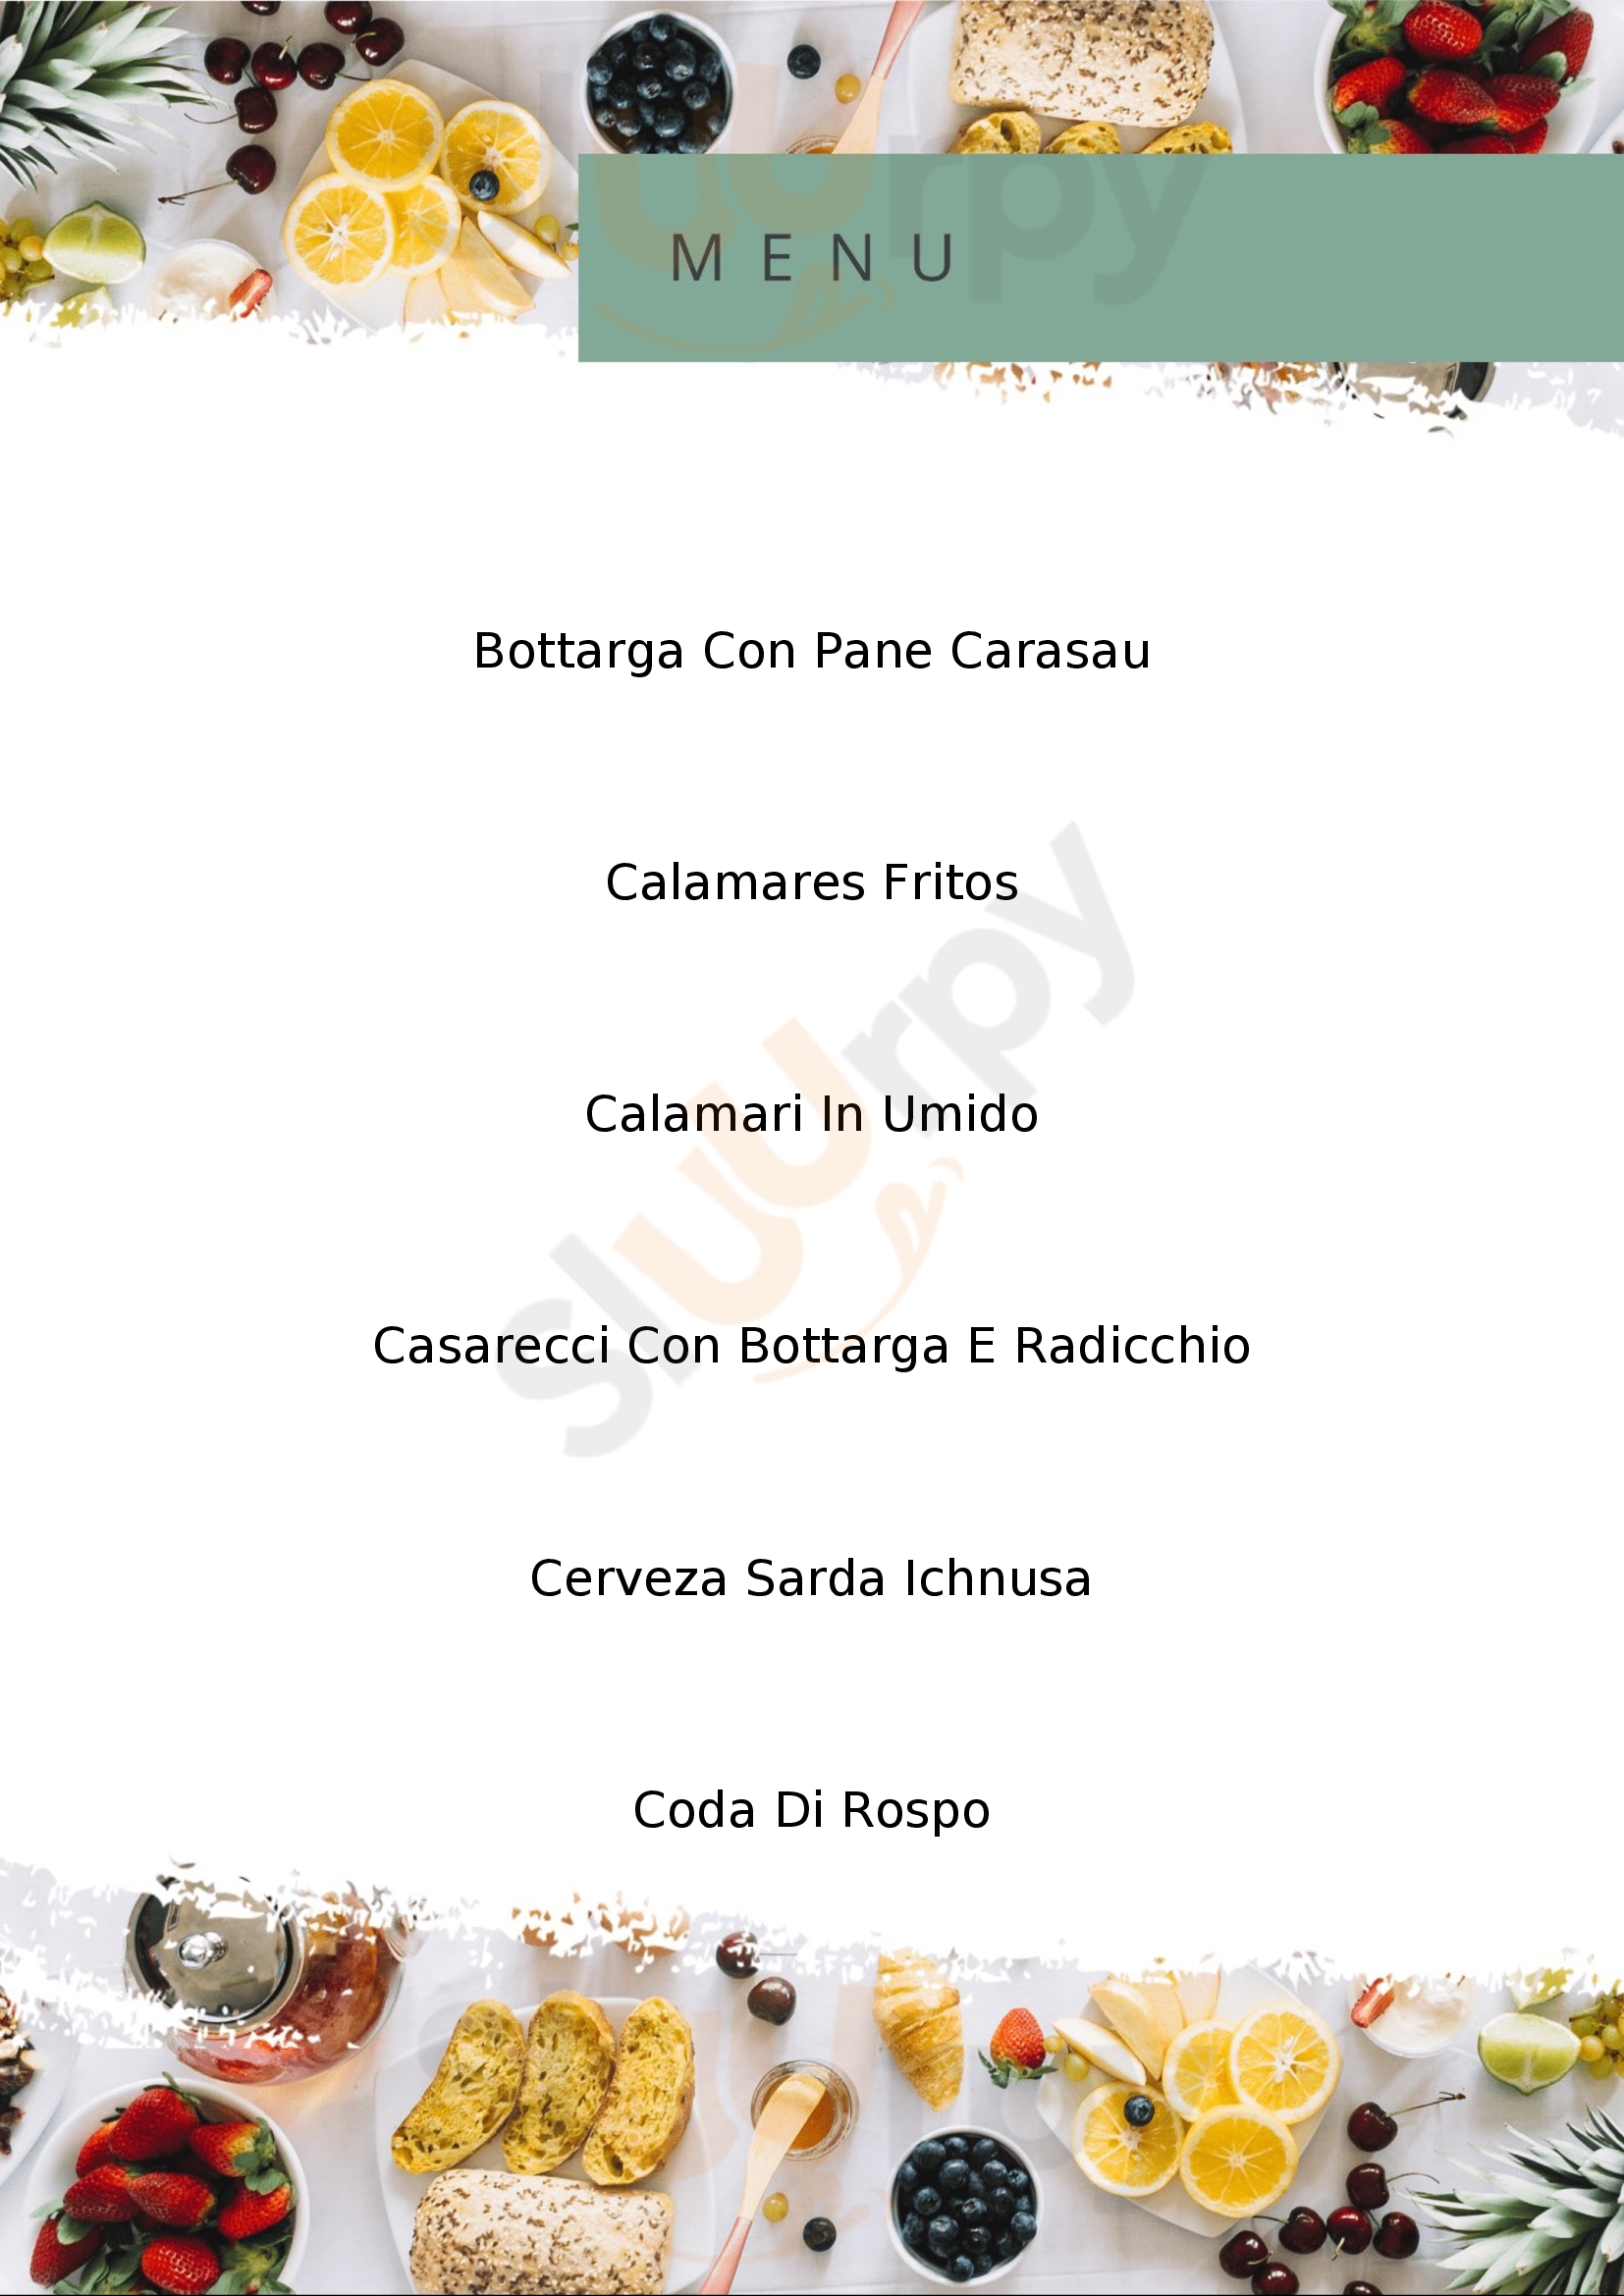 Paninoteca Gastronomia Bar Giardino Cabras menù 1 pagina